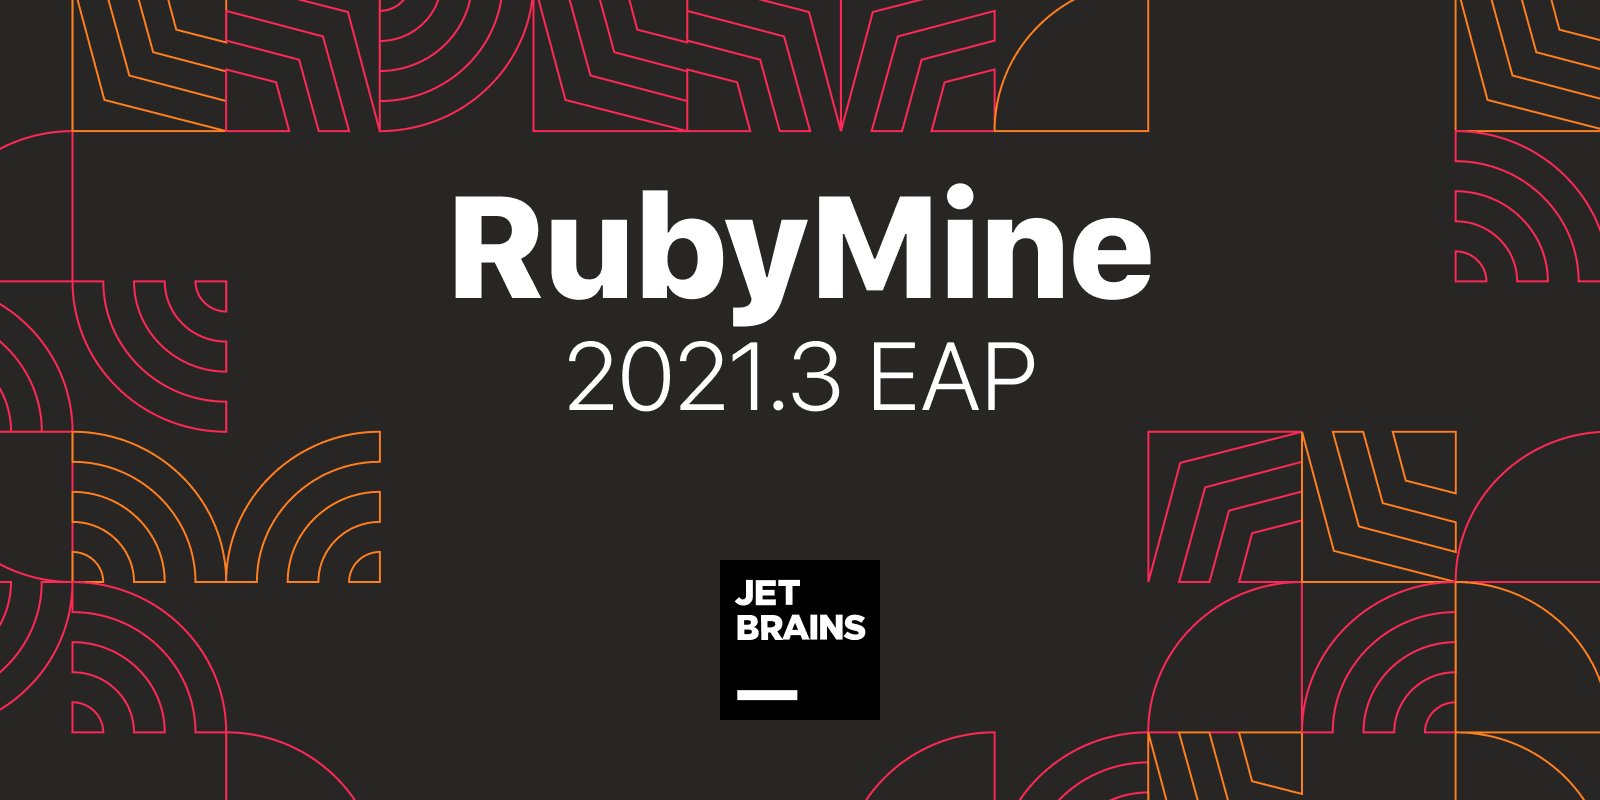 RubyMine 2021.3 EAP Is Open